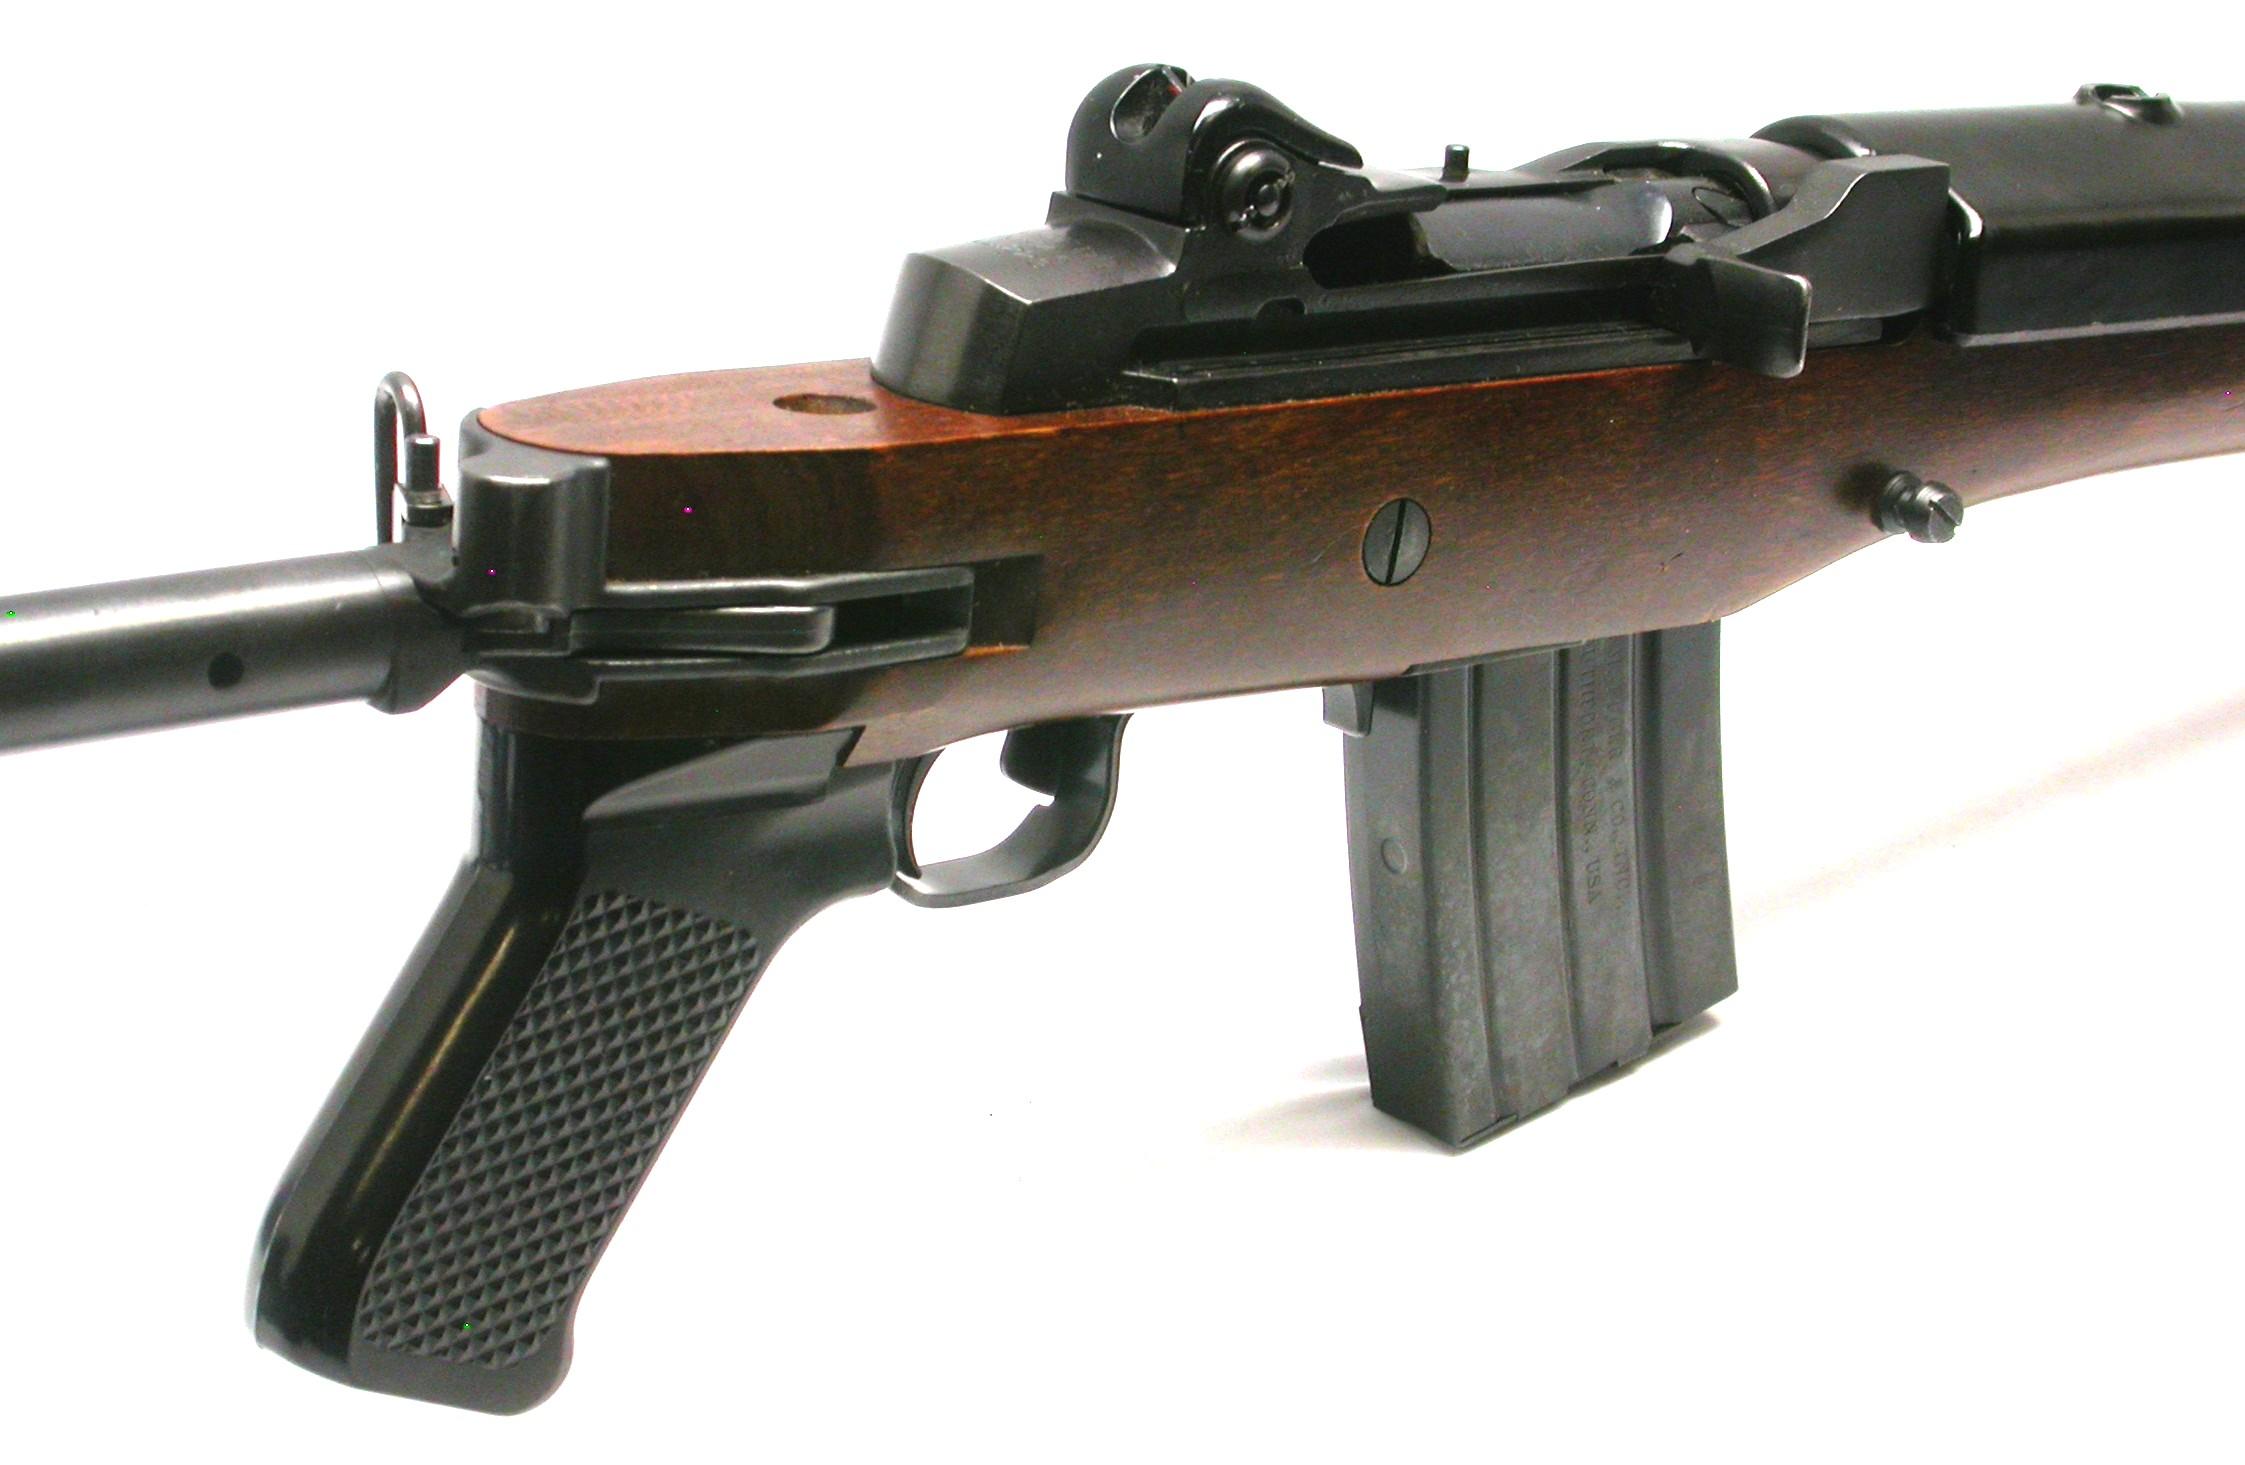 Ruger Mini-14 .223/5.56mm Semi-Automatic Ranch Rifle - FFL #183-52983 (CYM)